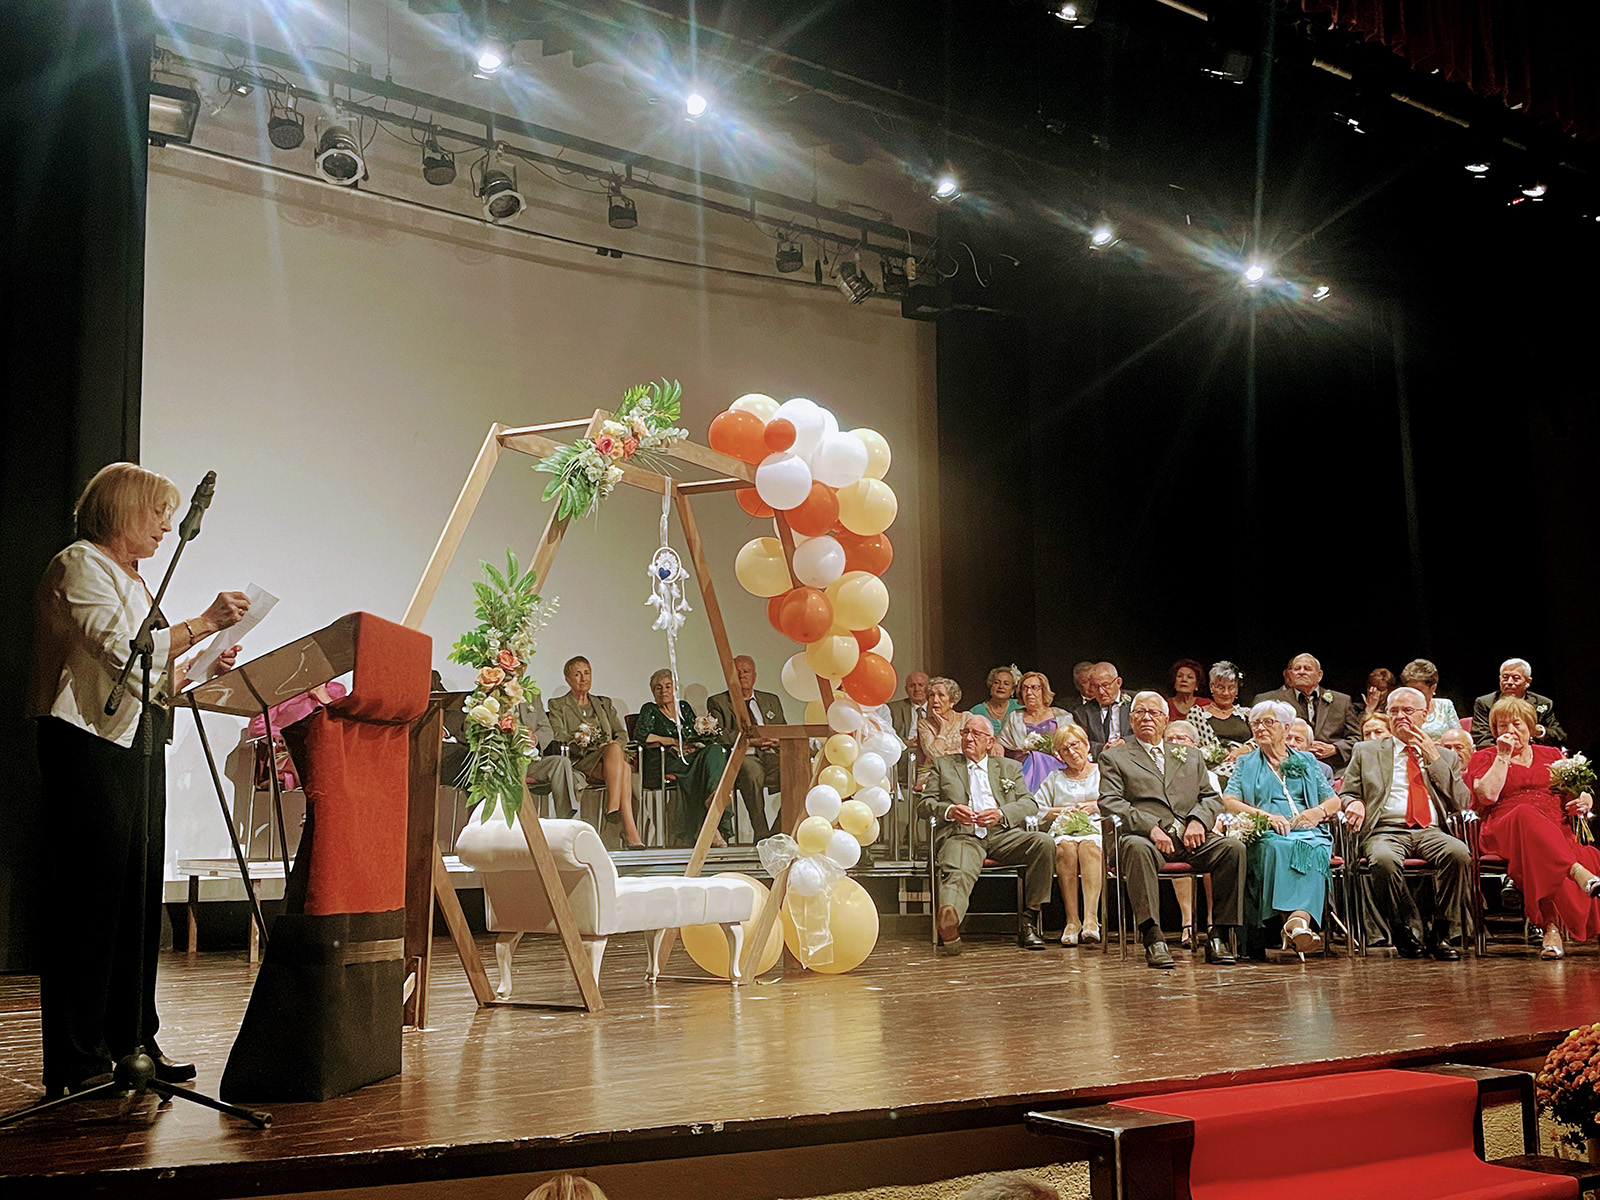 Quinze parelles de Roda de Berà celebren 50 anys d’amor al Casino Municipal